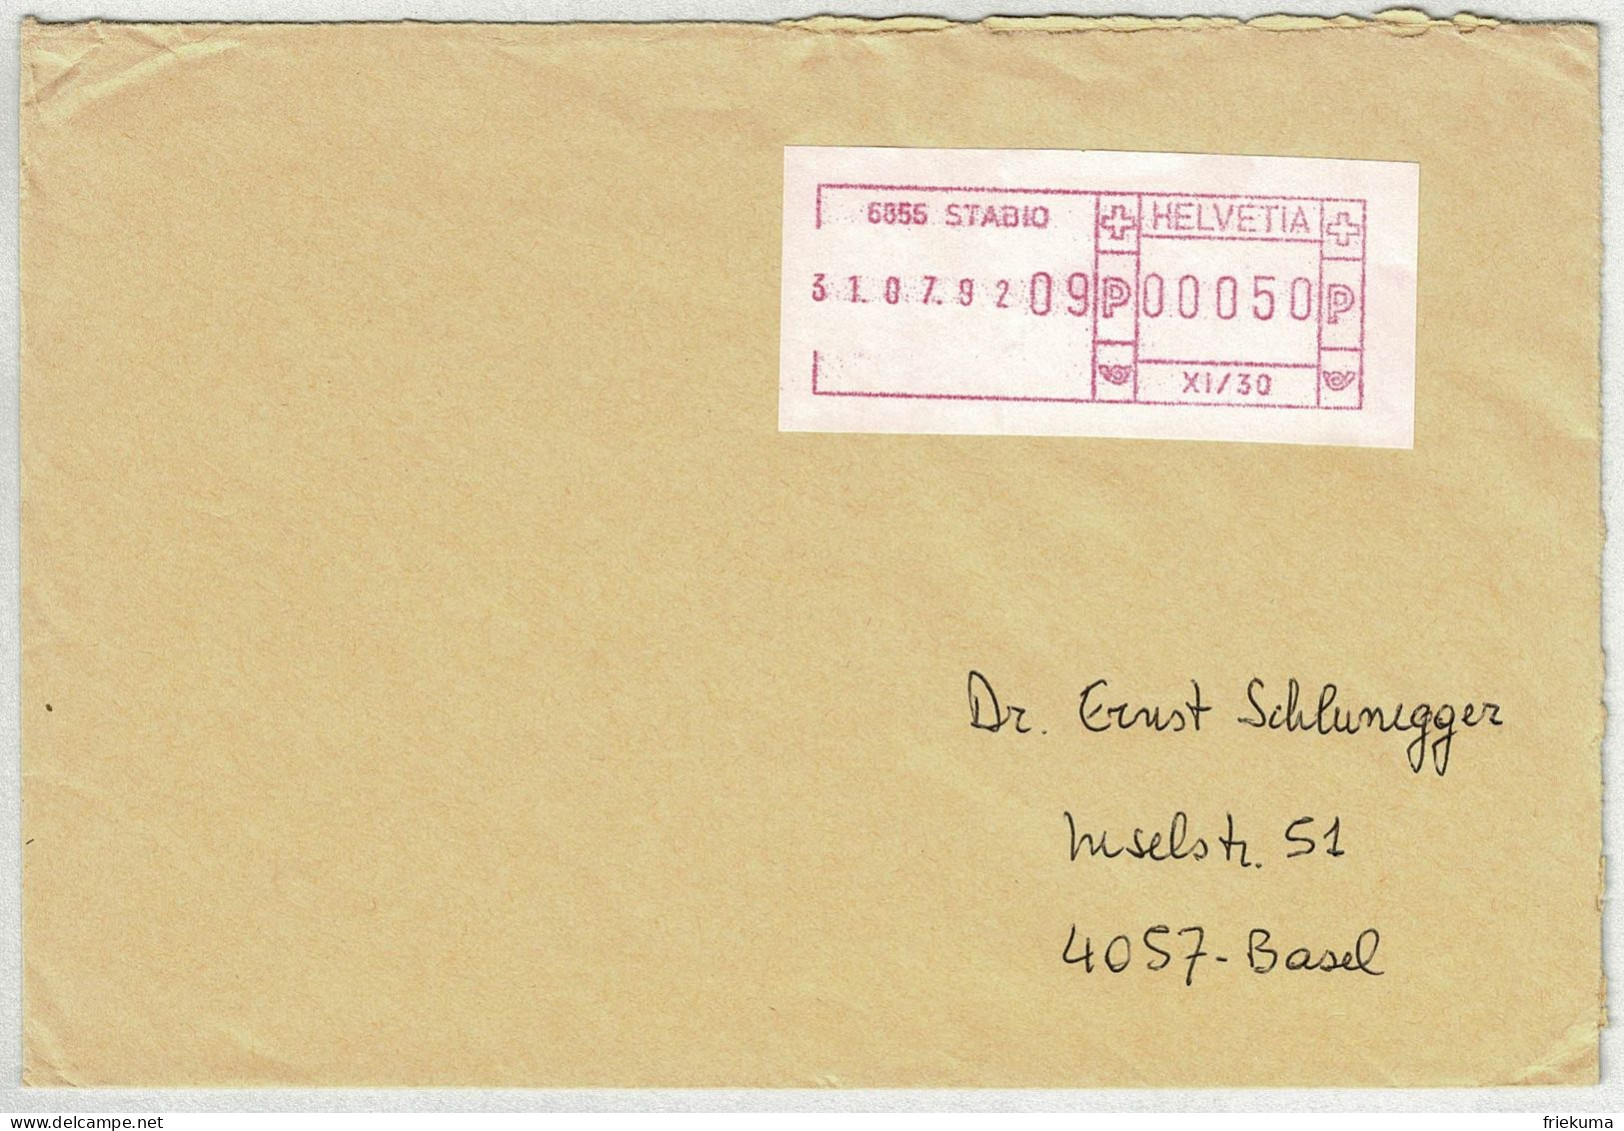 Schweiz 1992, Brief Stabio - Basel, Schalterfreistempel  - Automatenmarken